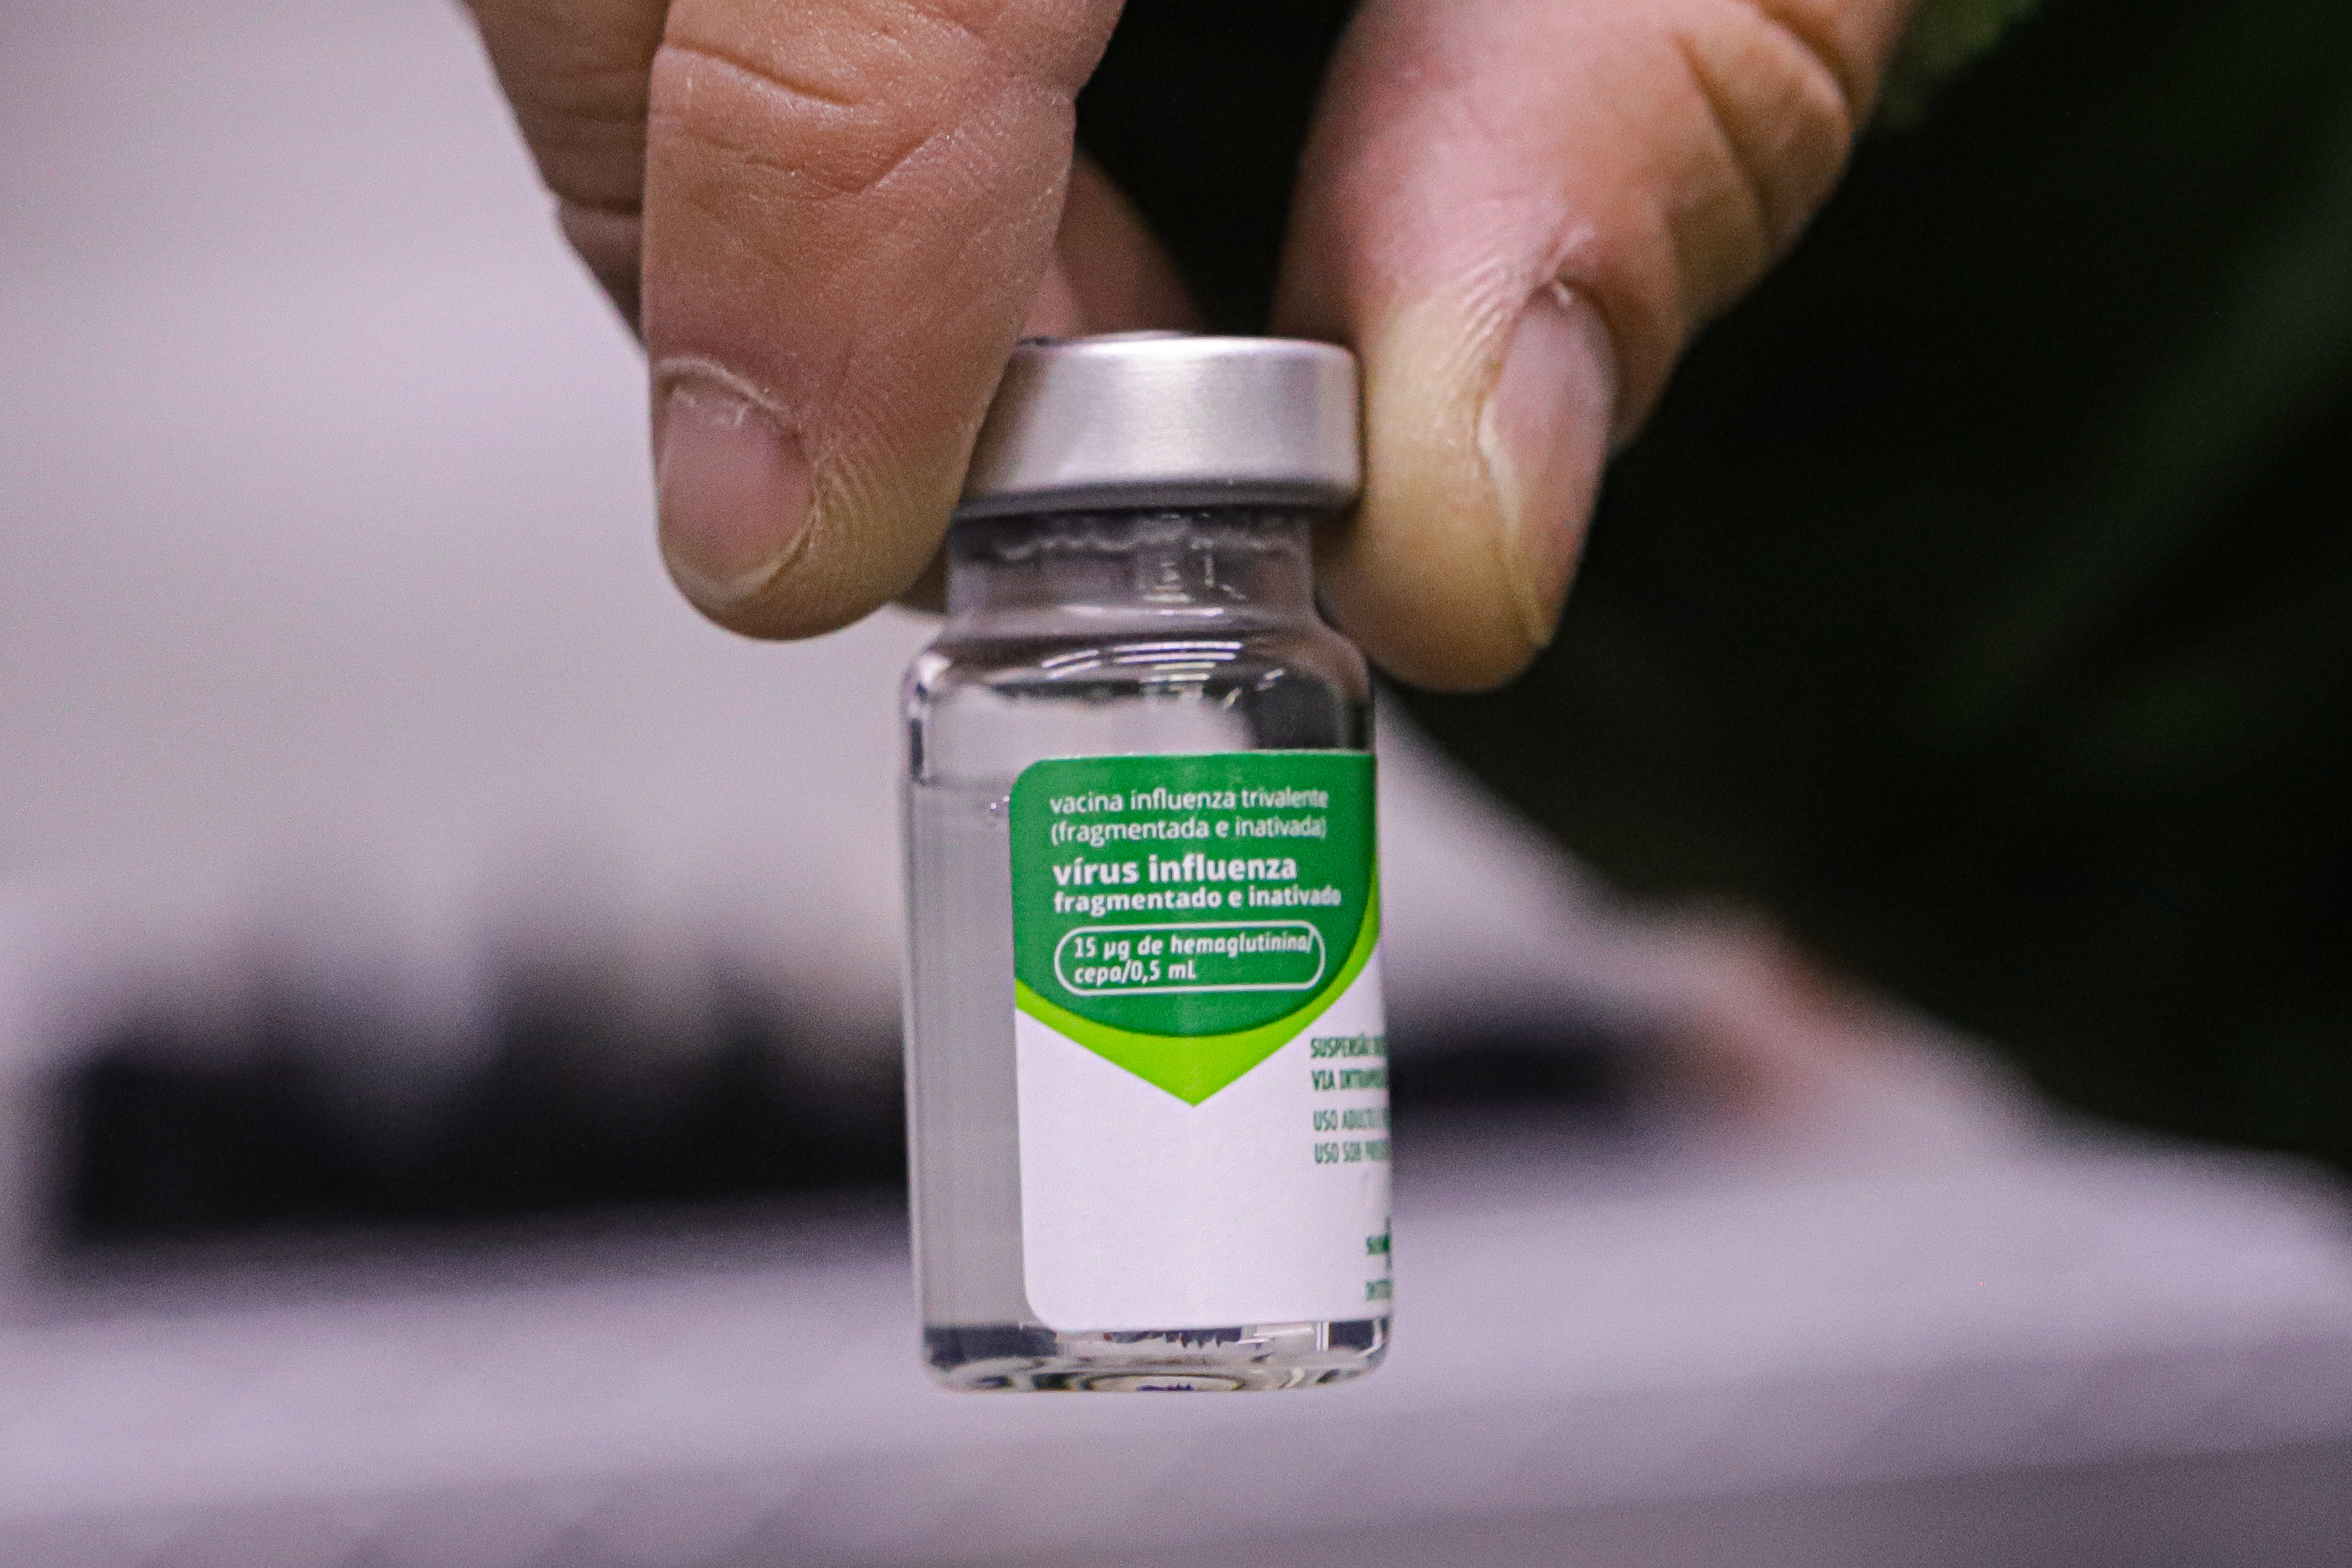 Paraná antecipa vacinação contra a gripe e campanha nacional deve começar na próxima semana